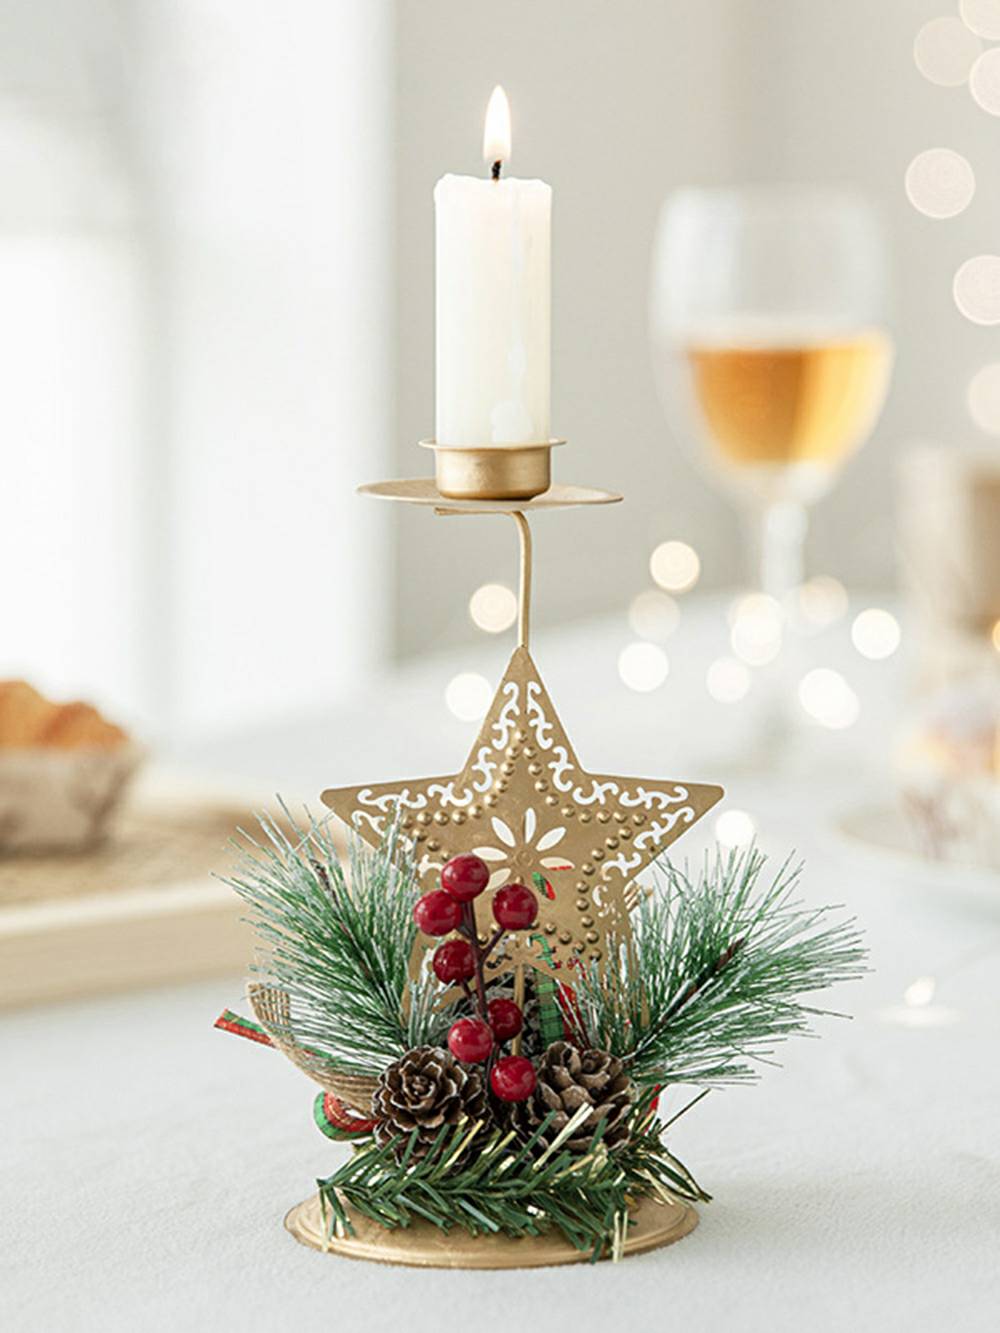 Portacandele natalizio in ferro dorato - Accento decorativo festivo